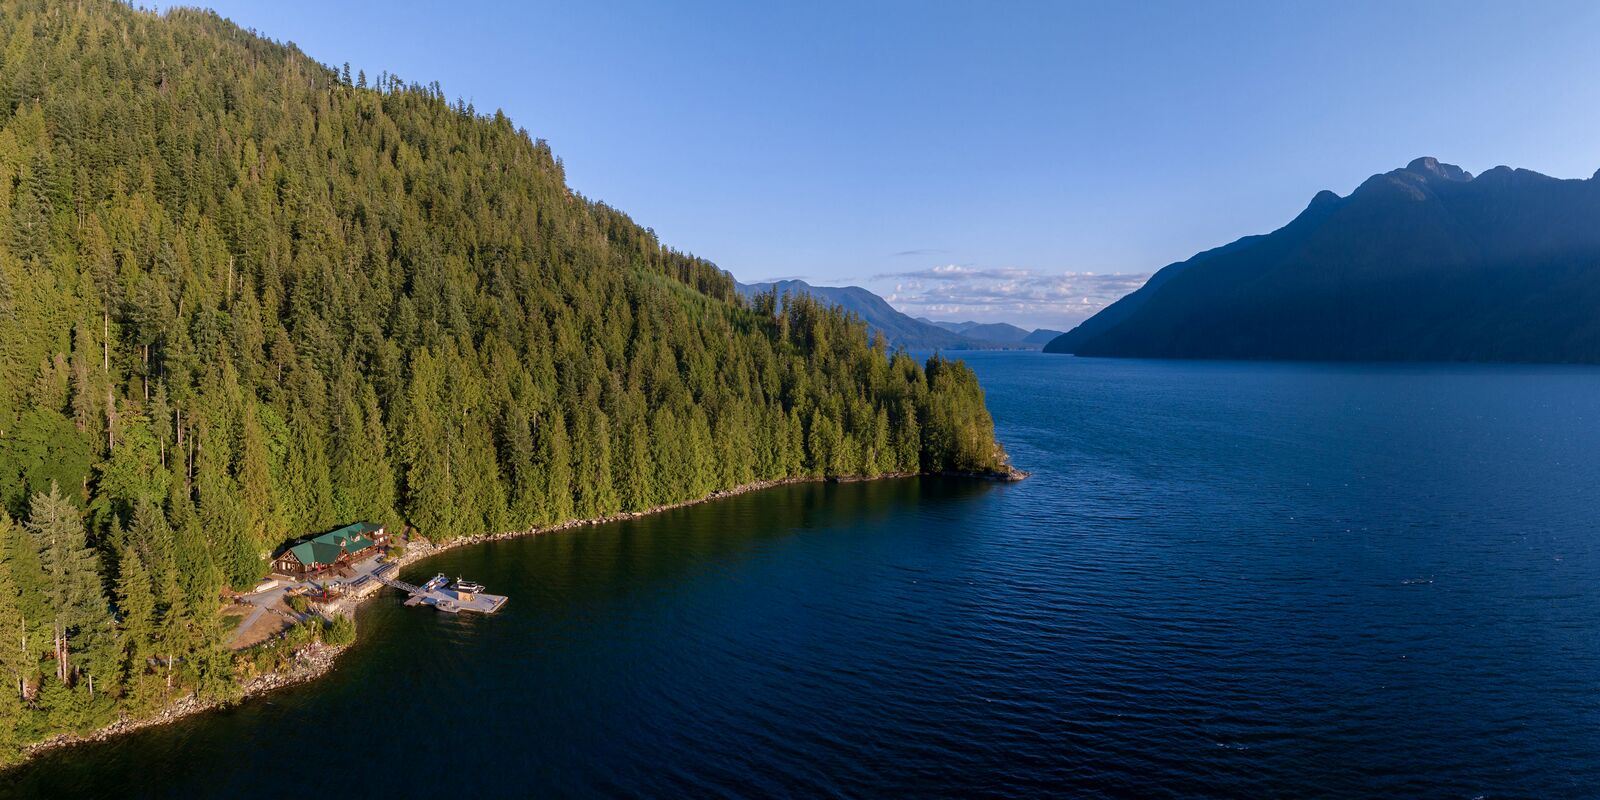 Wunderschöne Natur um das Klahoose Wilderness Resort in British Columbia herum